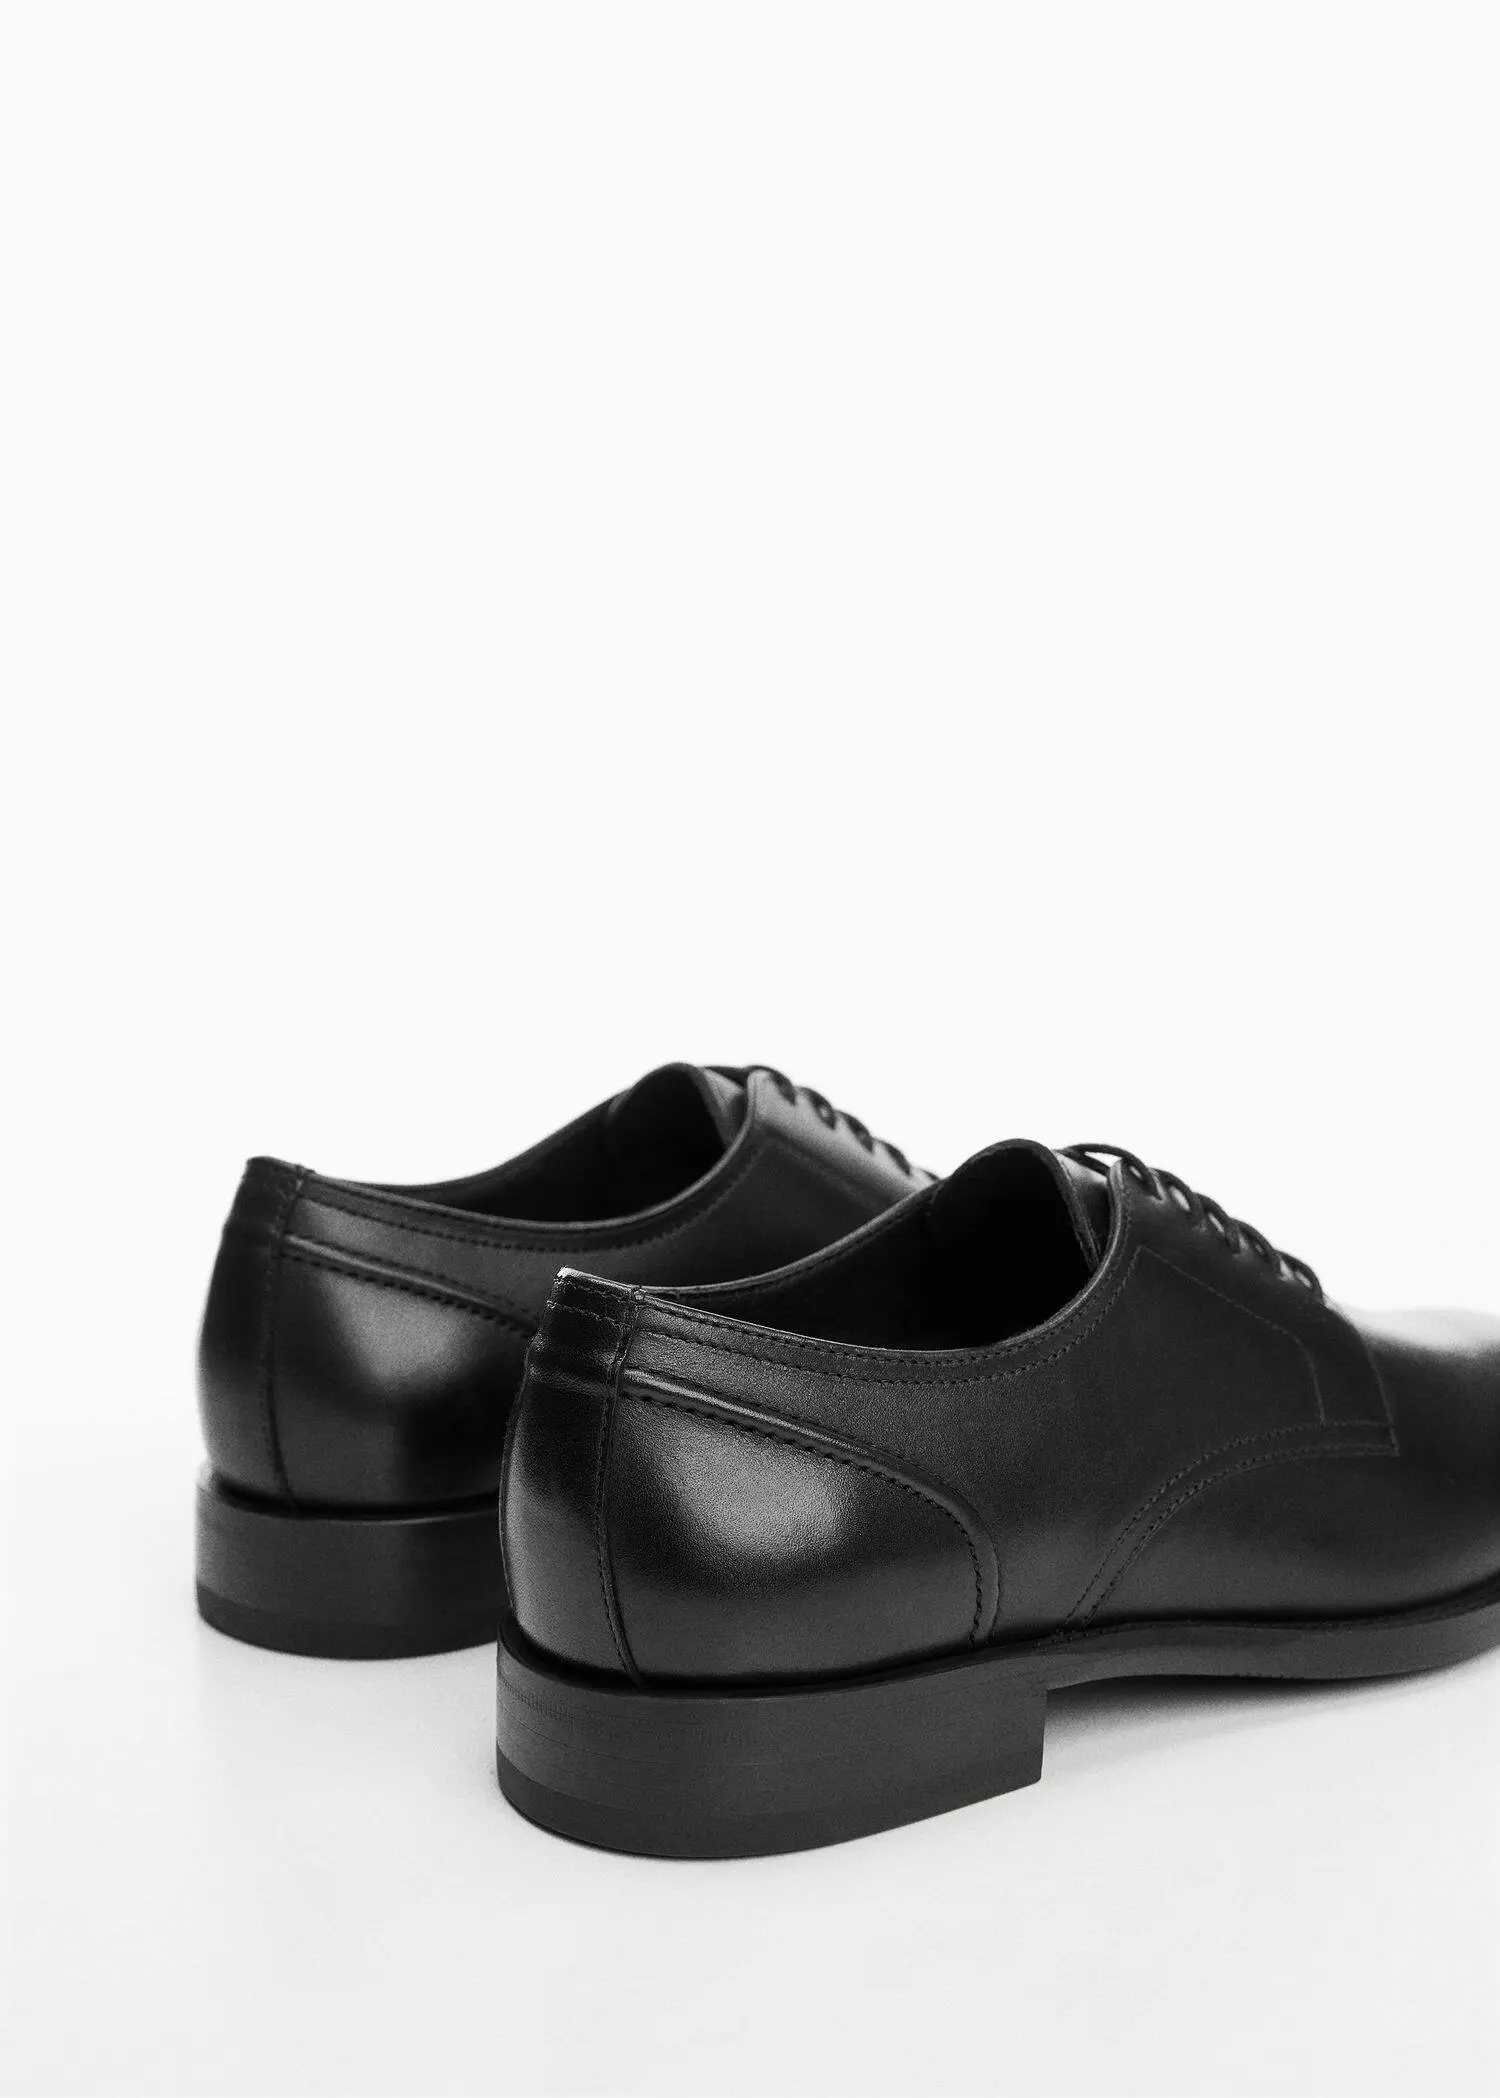 Mango Leather suit shoes. 3